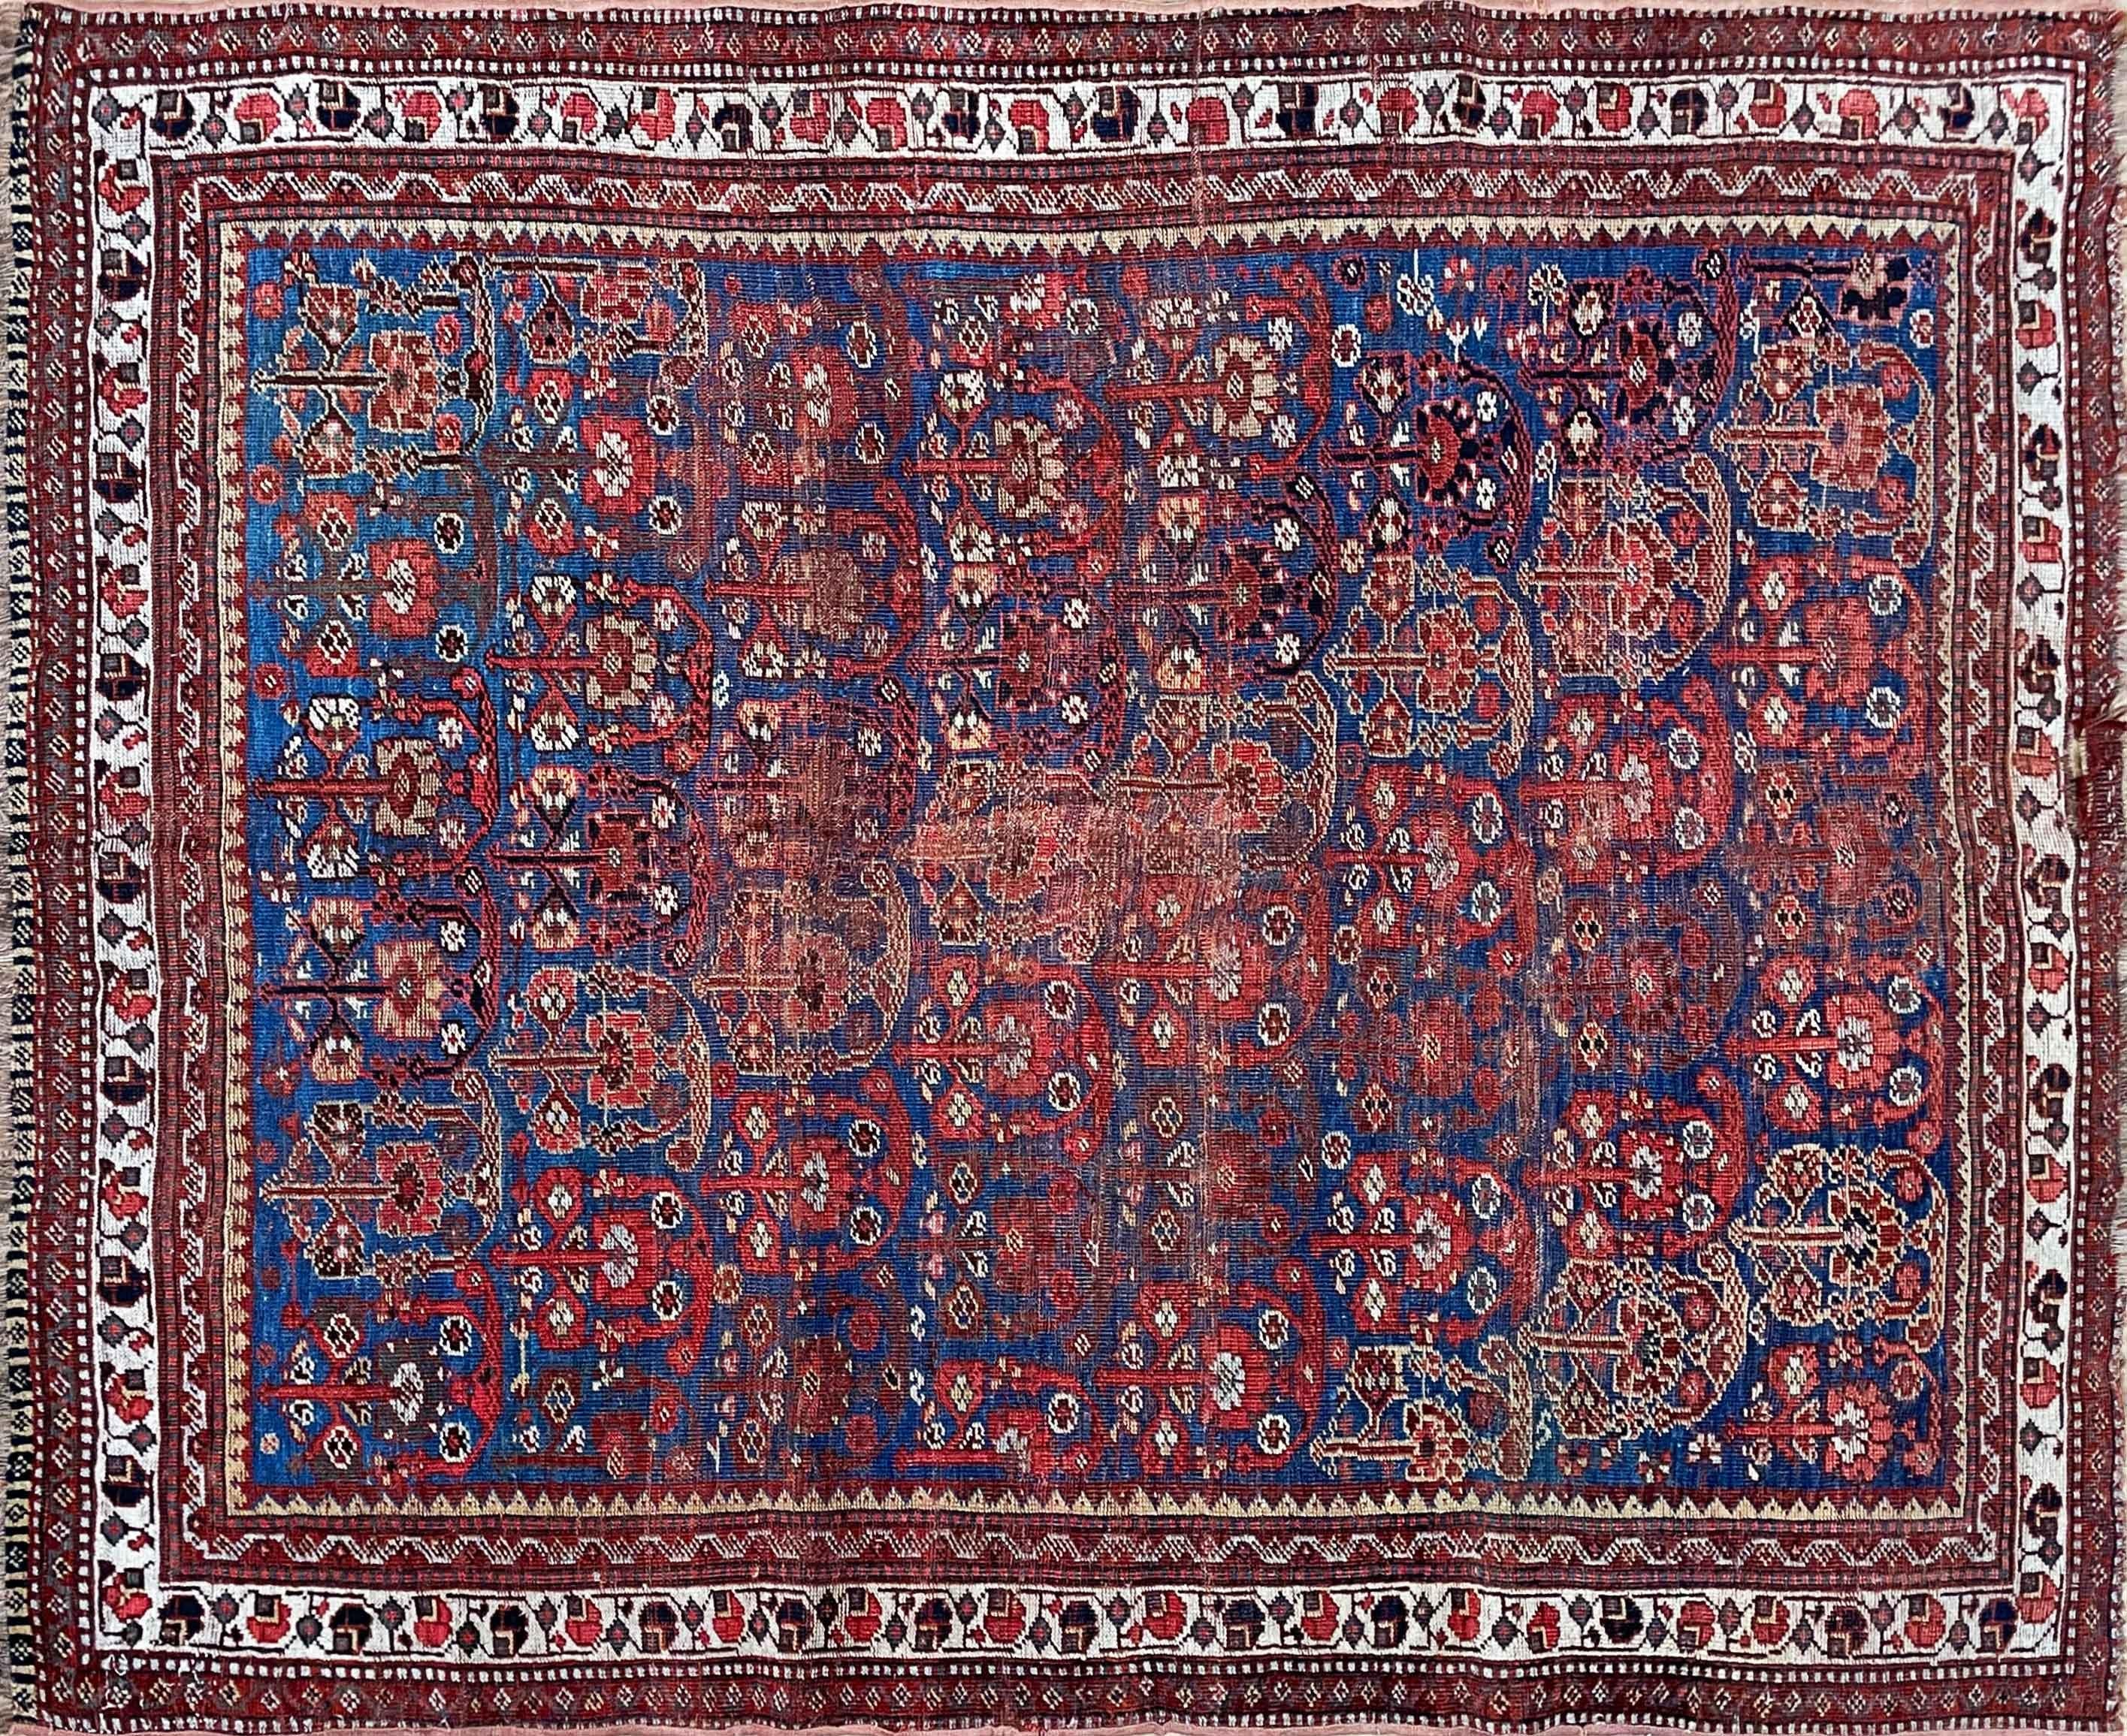 Tapis persan ancien Qashqai exquis - Un véritable chef-d'œuvre

Transportez-vous dans le riche héritage de l'artisanat persan avec ce remarquable tapis Qashqai ancien, datant des années 1870 et mesurant 4'5